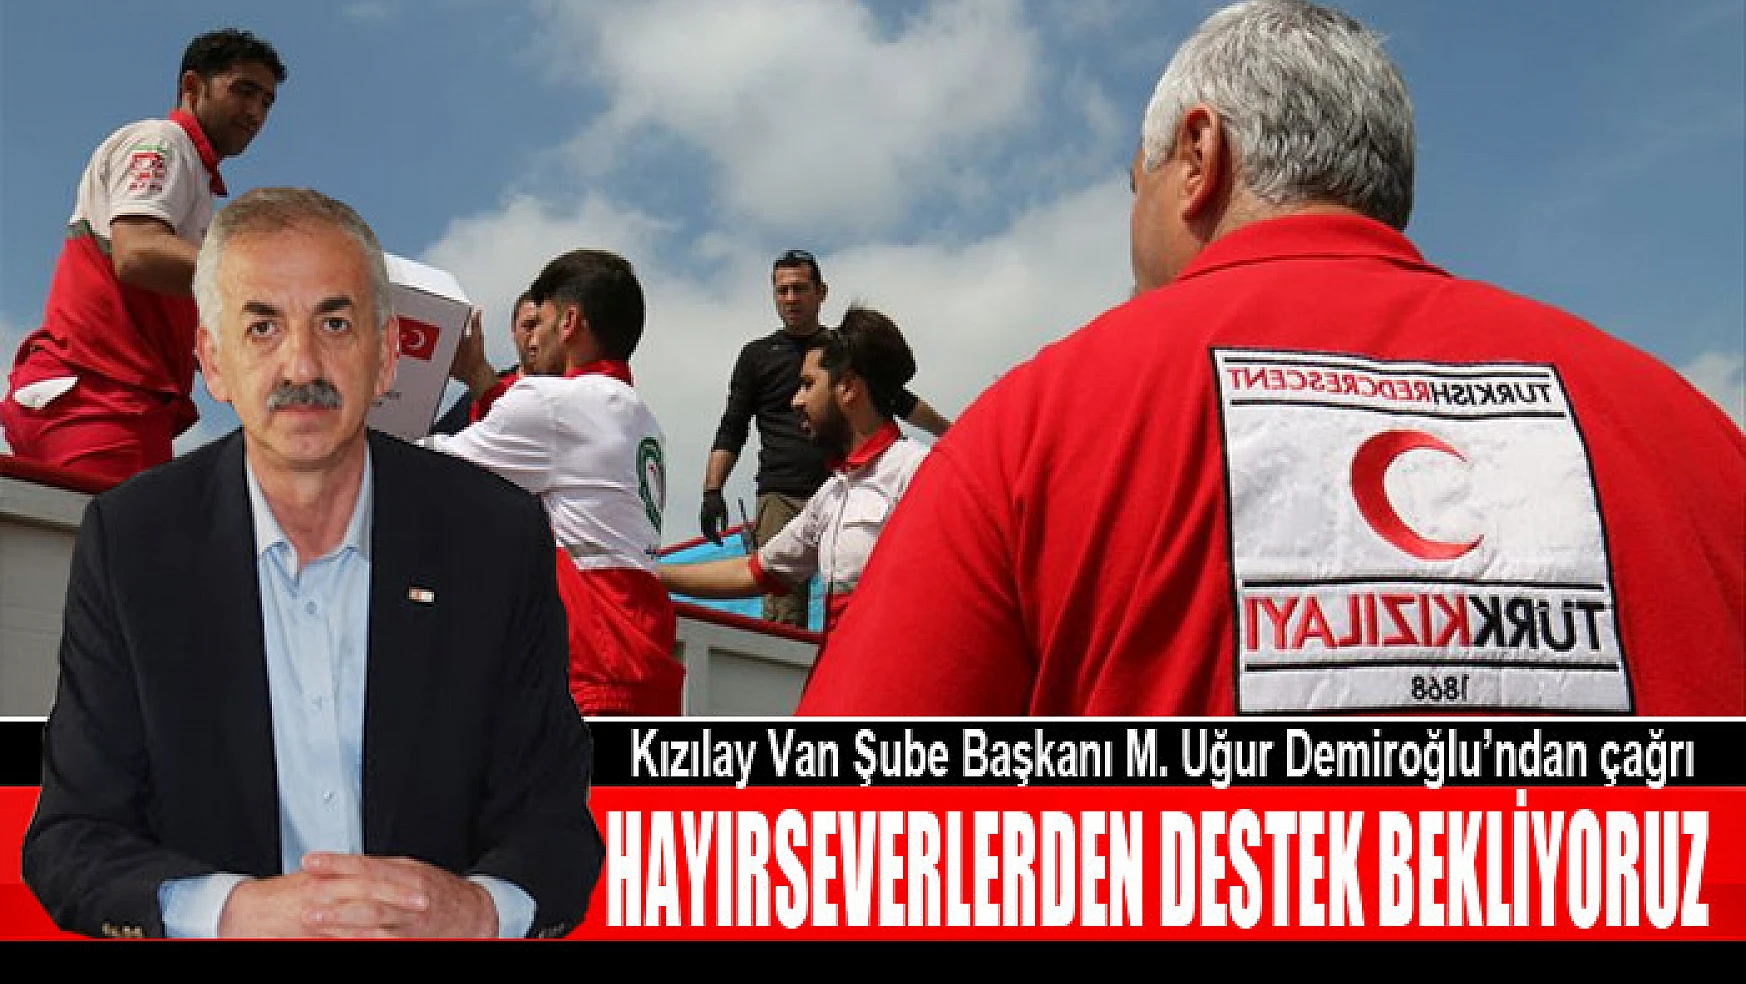 Kızılay Van Şube Başkanı M. Uğur Demiroğlu: Kızılay destek bekliyor